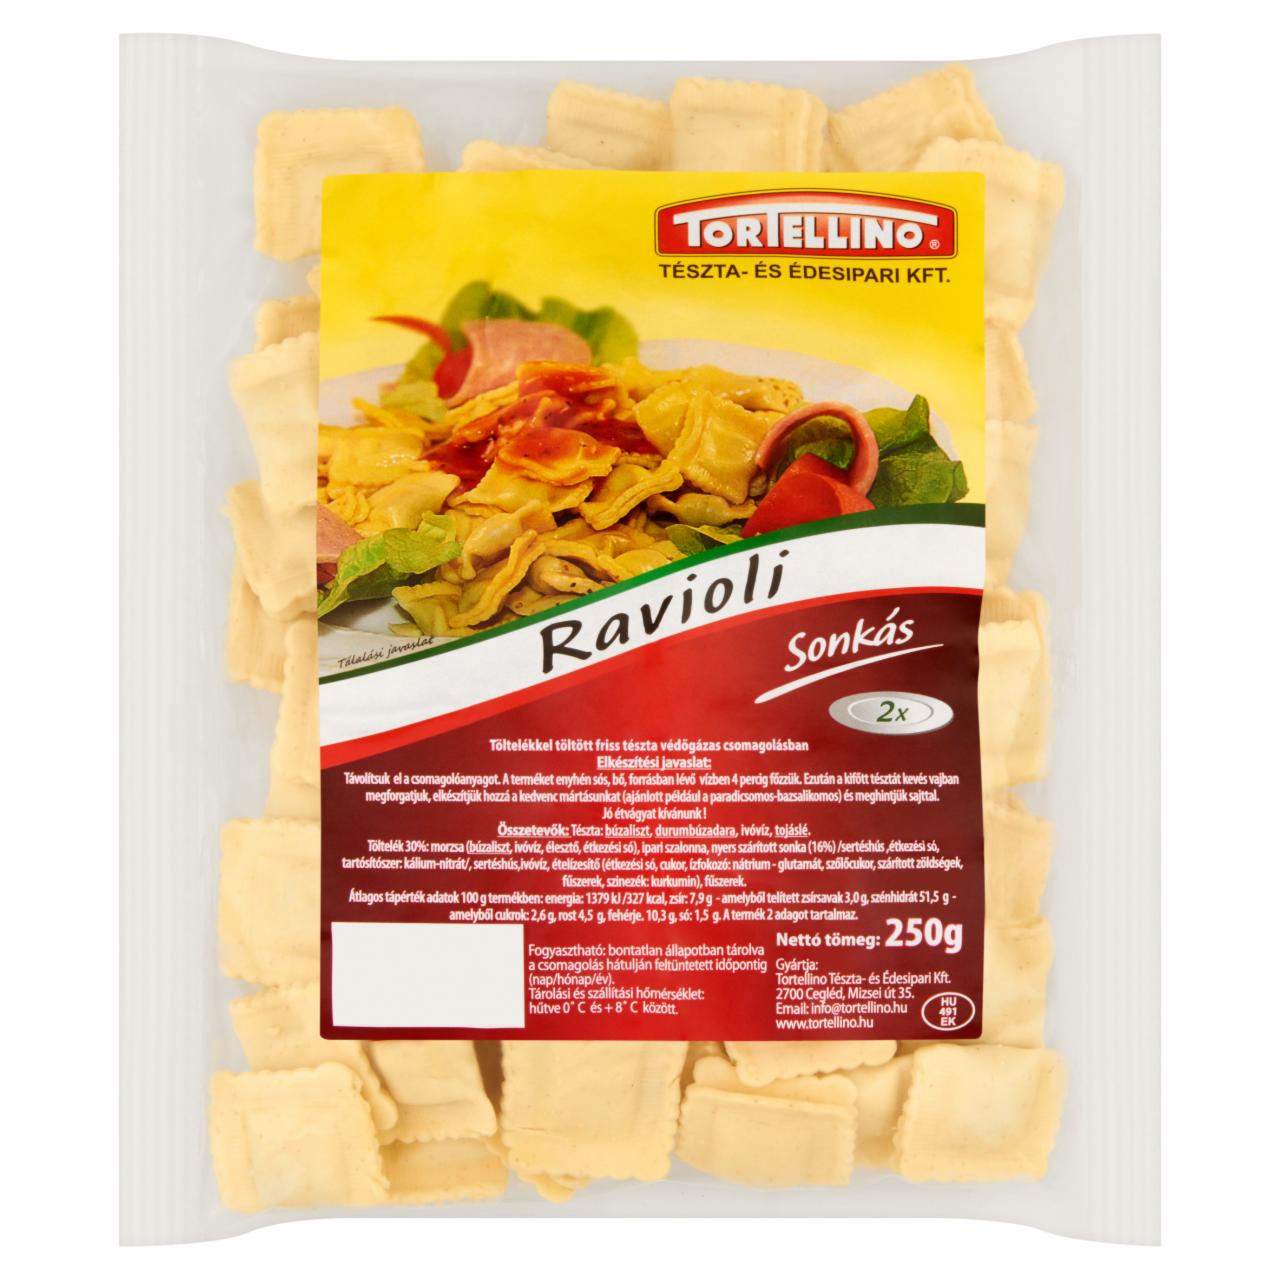 Képek - Tortellino Ravioli sonkás töltelékkel töltött friss tészta 250 g